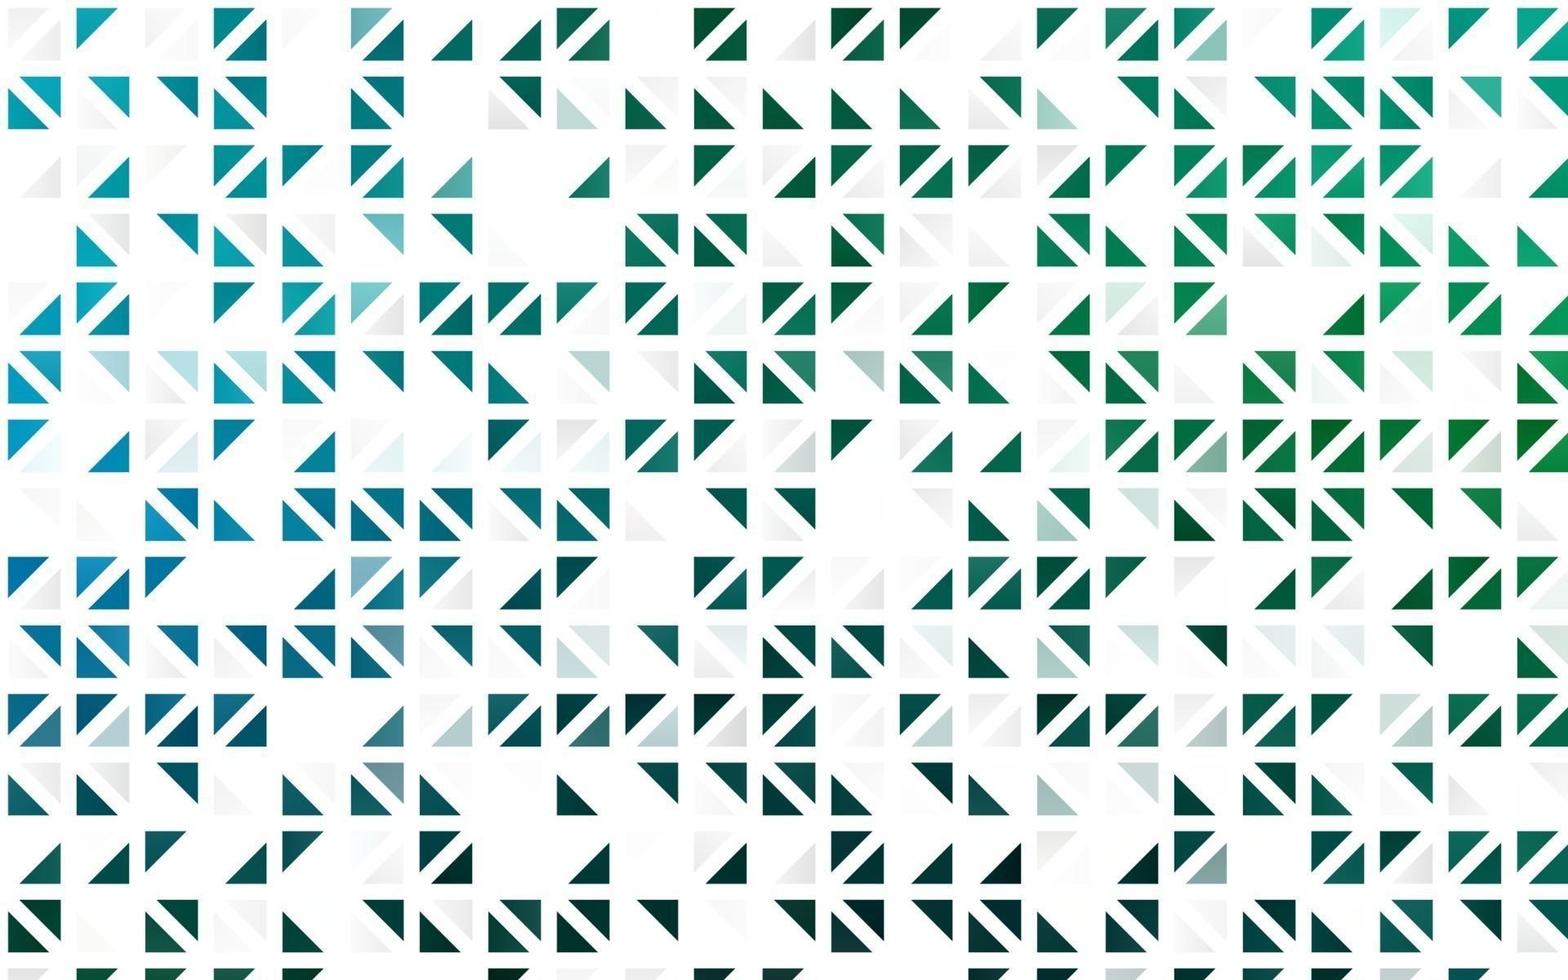 hellblauer, grüner Vektor nahtlose Abdeckung im polygonalen Stil.